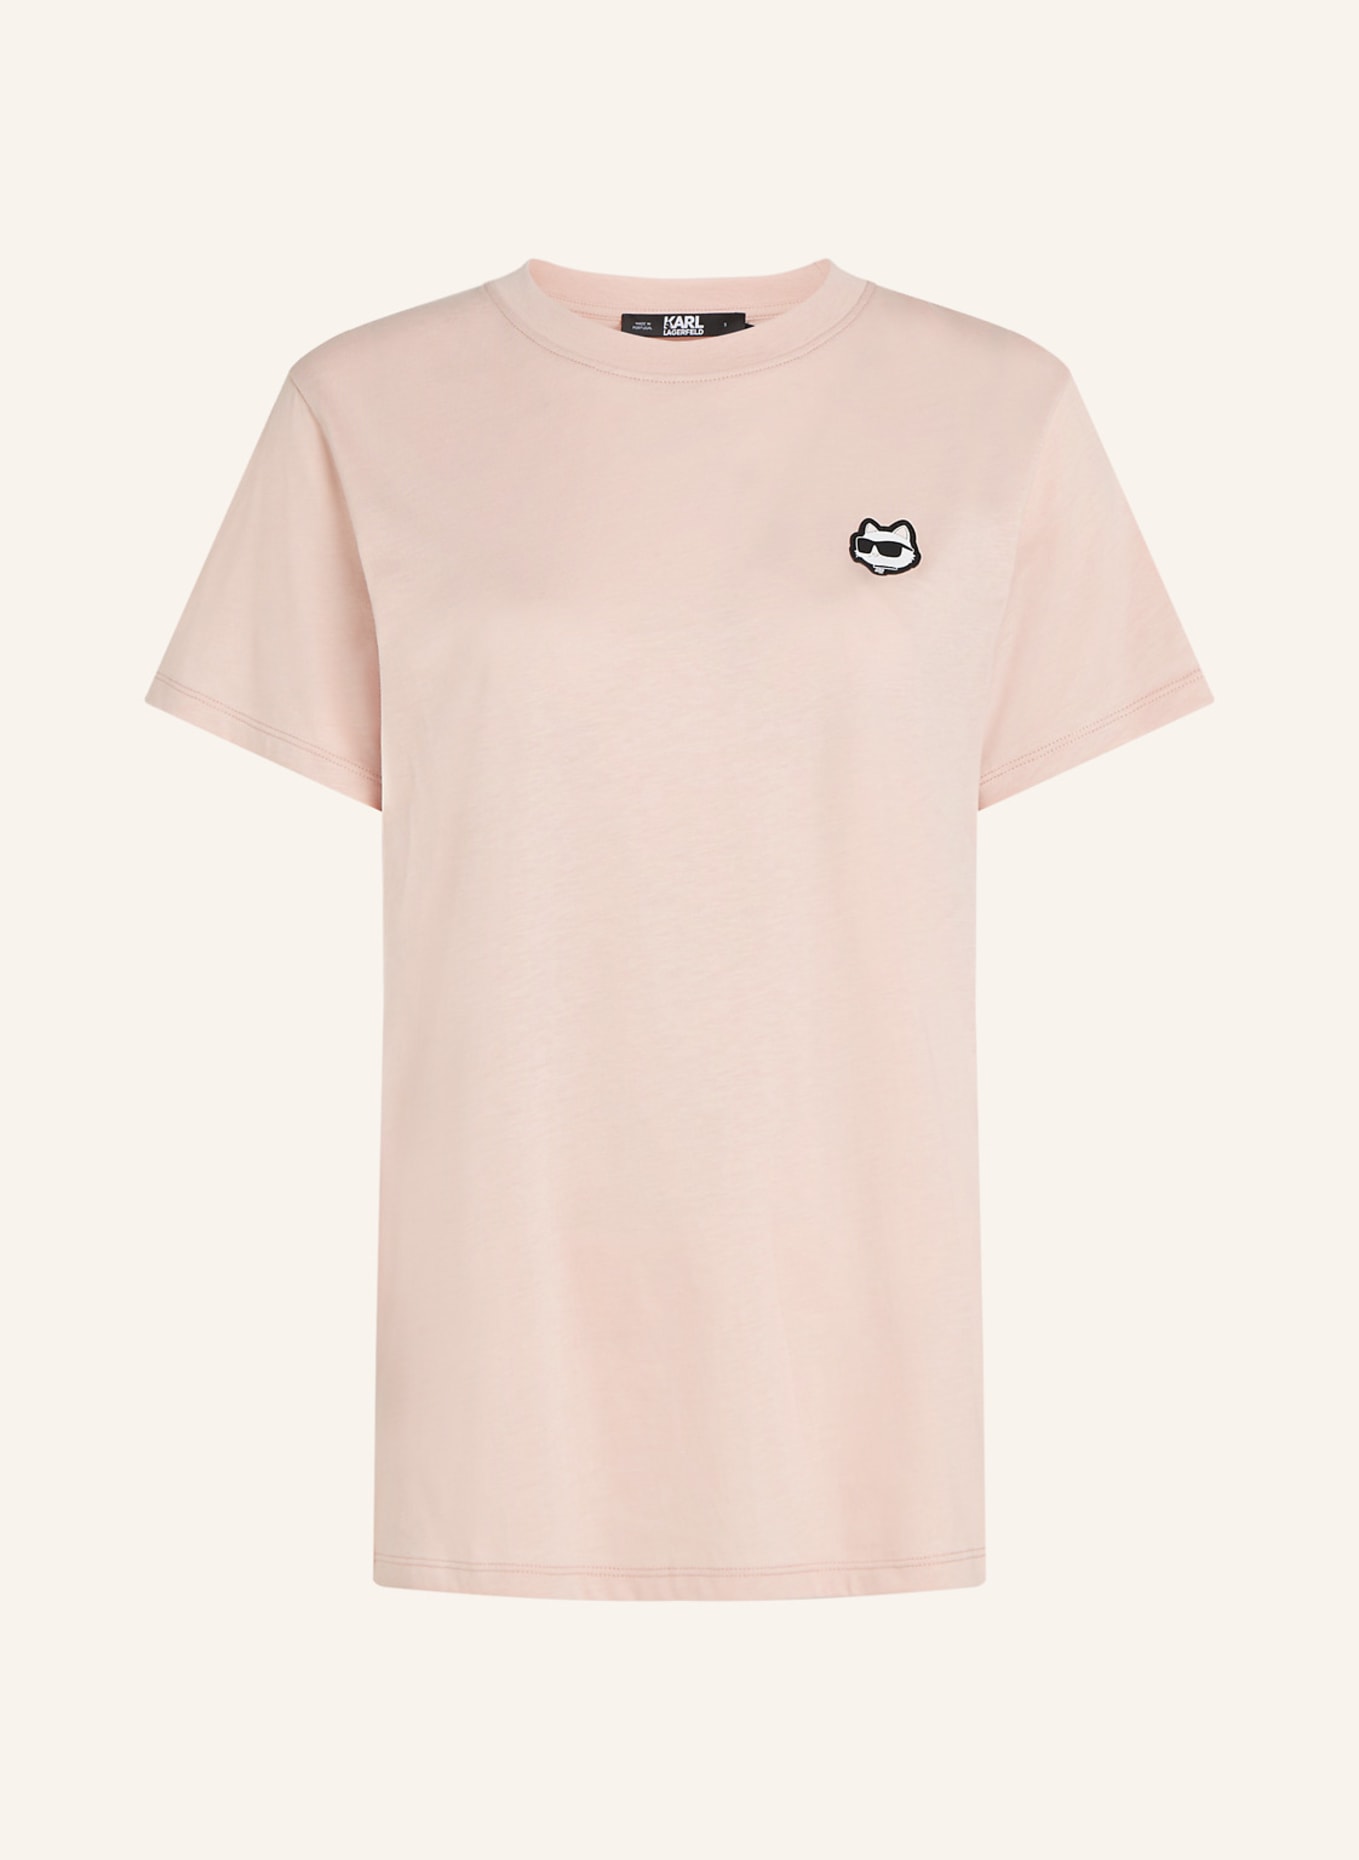 KARL LAGERFELD T-shirt, Farbe: ROSA (Bild 1)